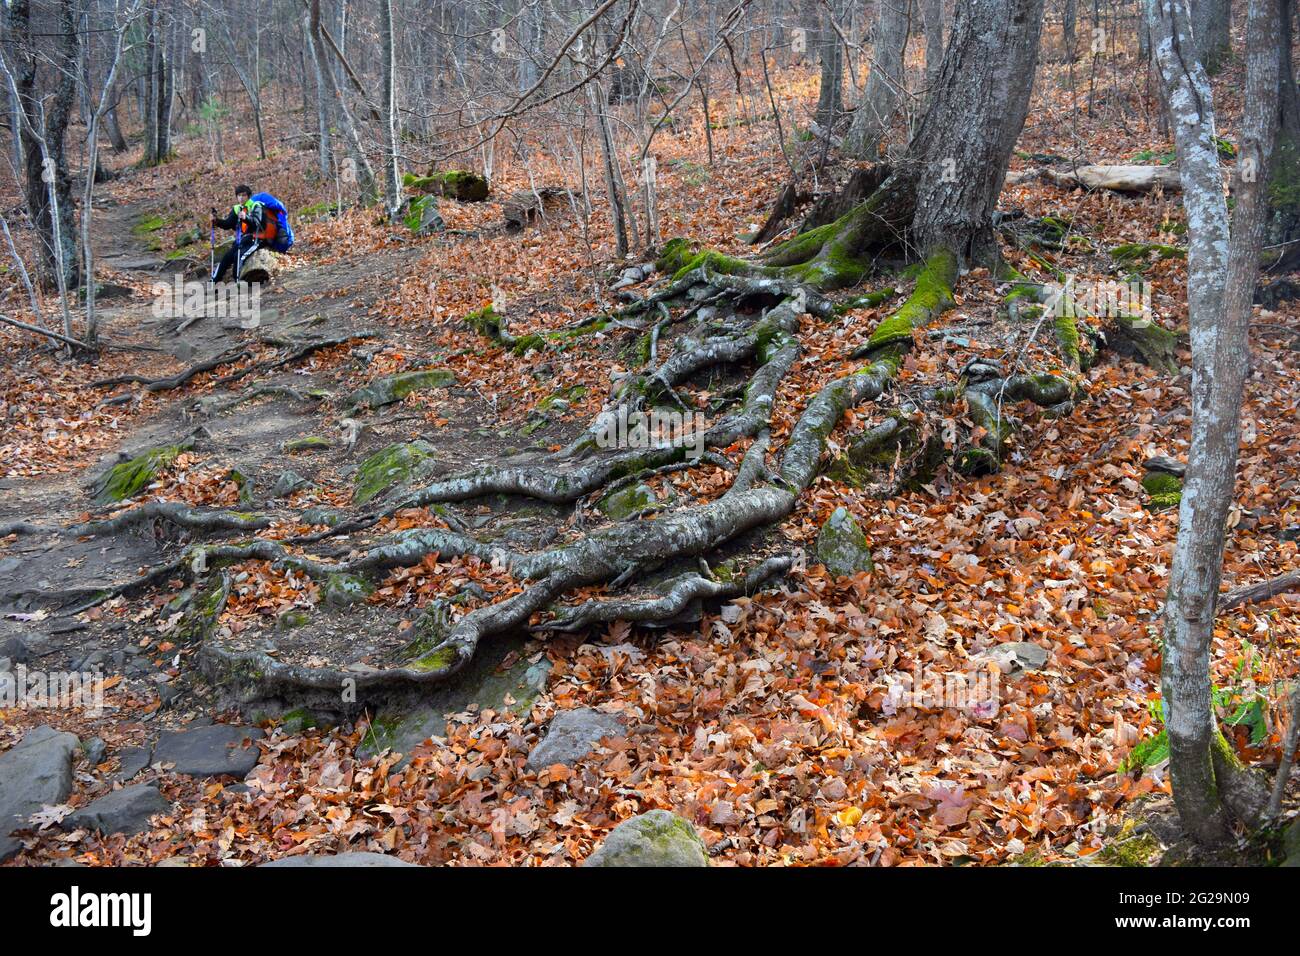 Caminante descansando en el sendero Appalachian cerca de las raíces de los árboles Foto de stock